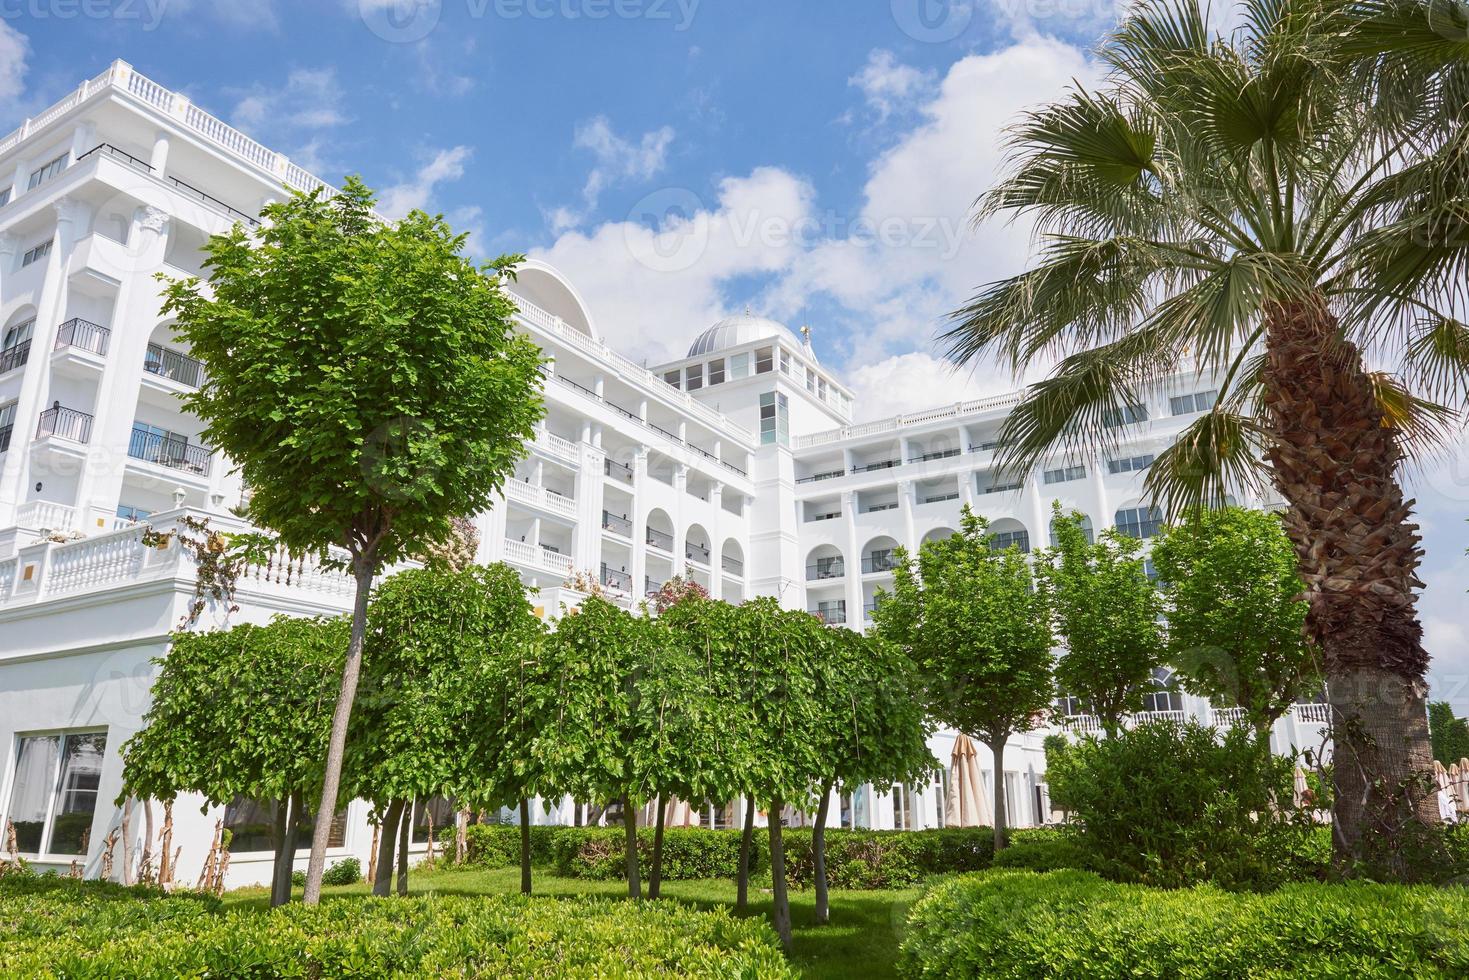 het populaire resort amara dolce vita luxe hotel. met zwembaden en waterparken en recreatiegebied langs de zeekust in turkije. tekirova-kemer foto